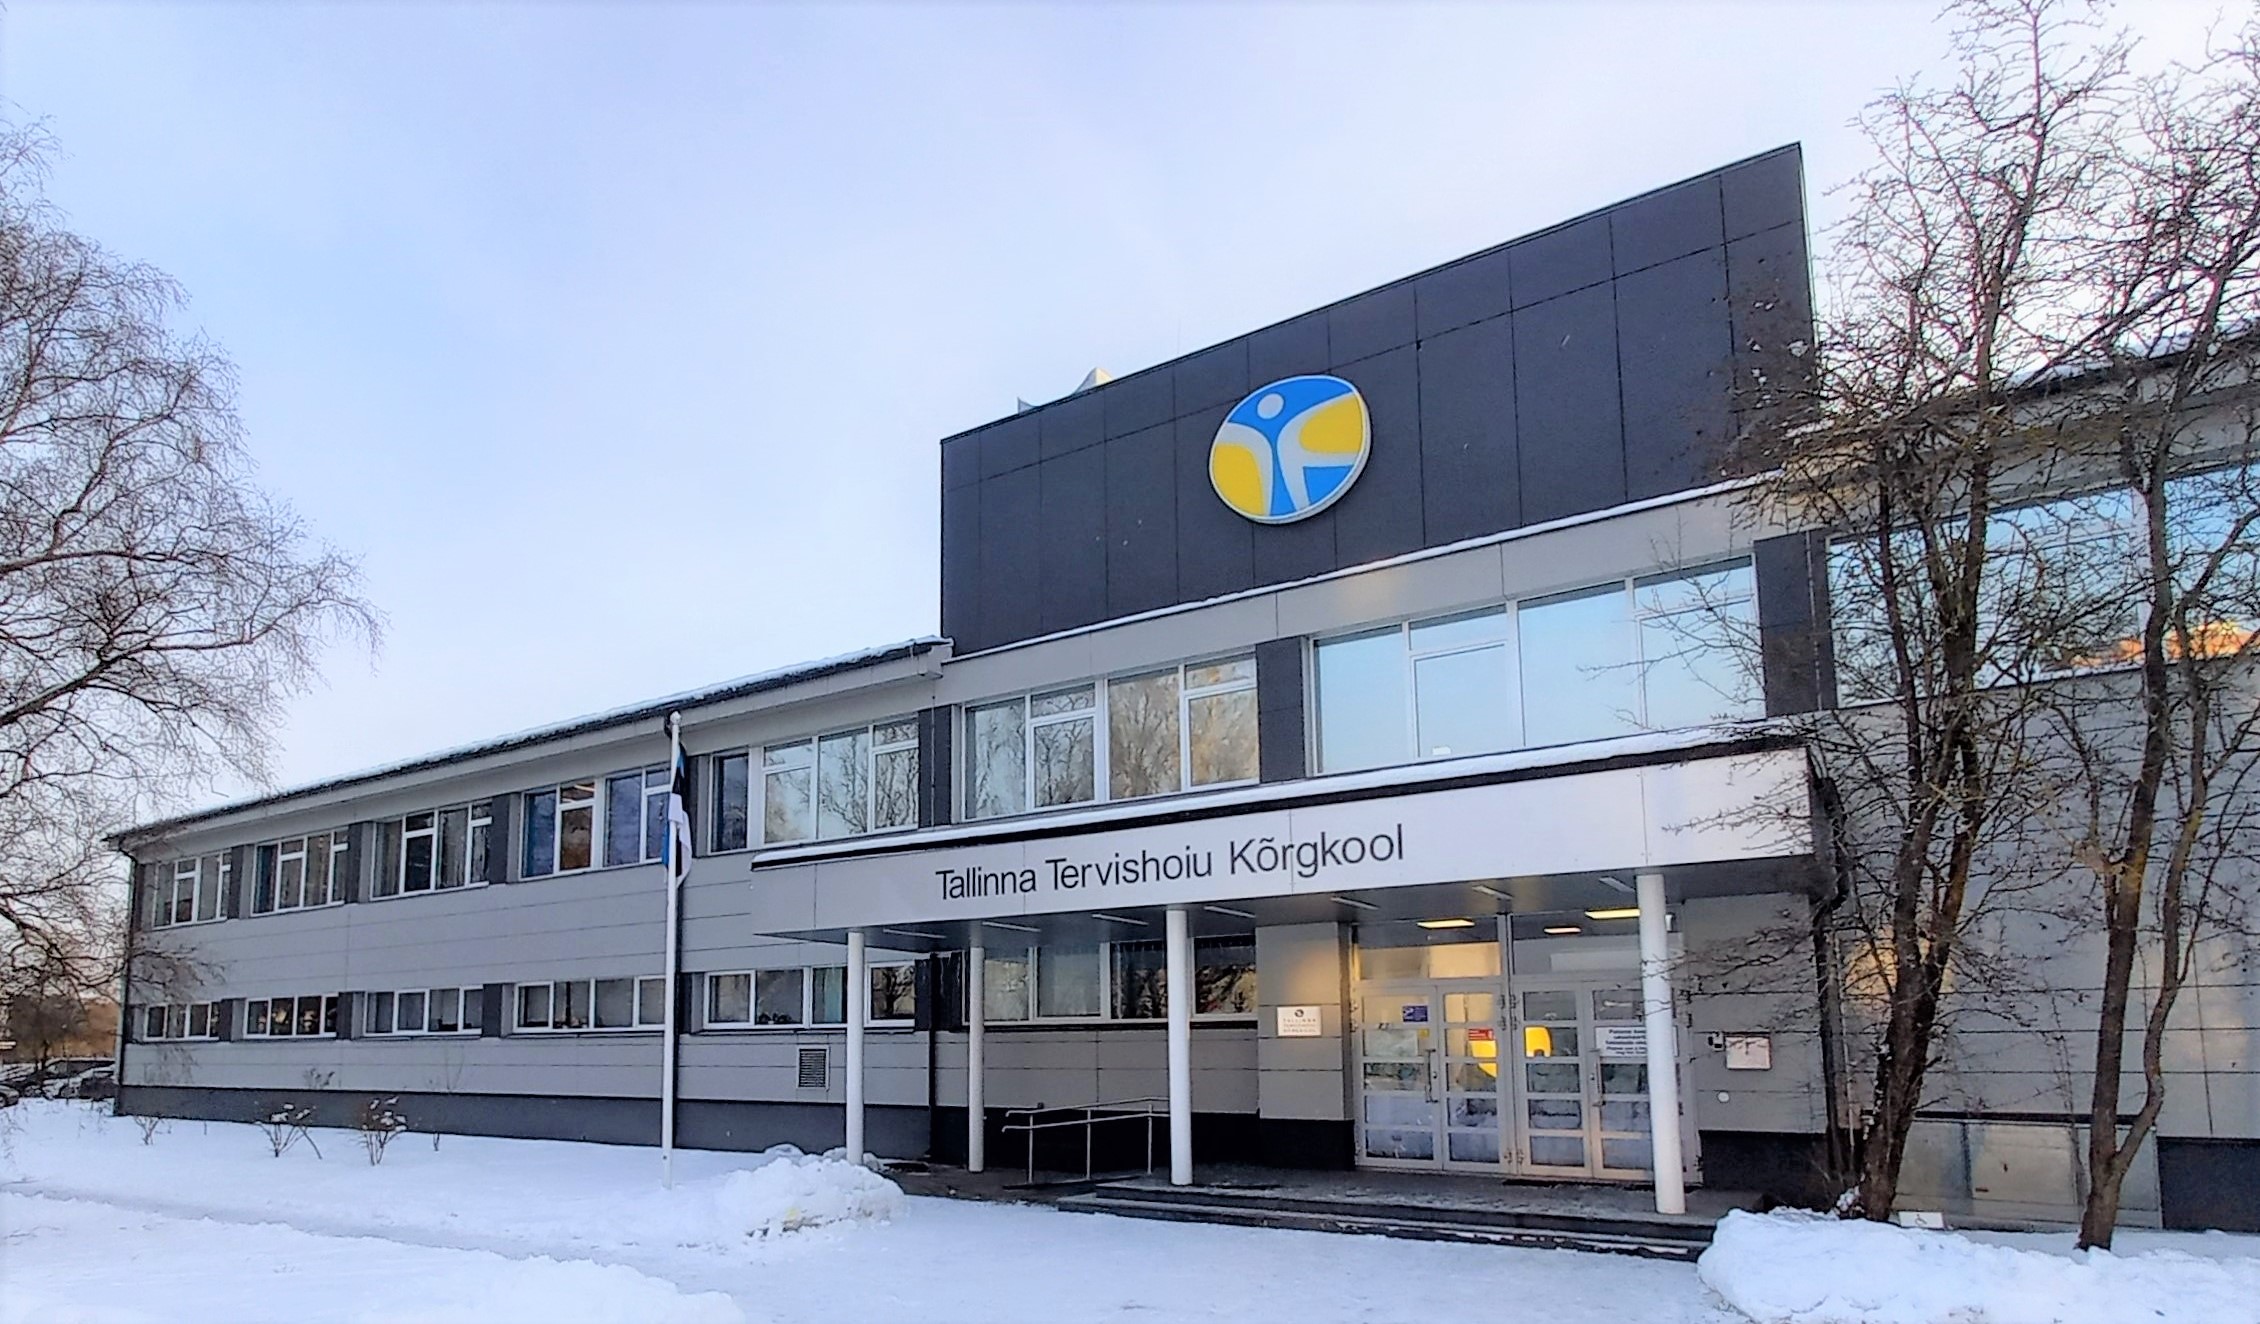 Tallinna Tervishoiu Kõrgkooli talvised avaaktused – kuupäevad ja kellaajad